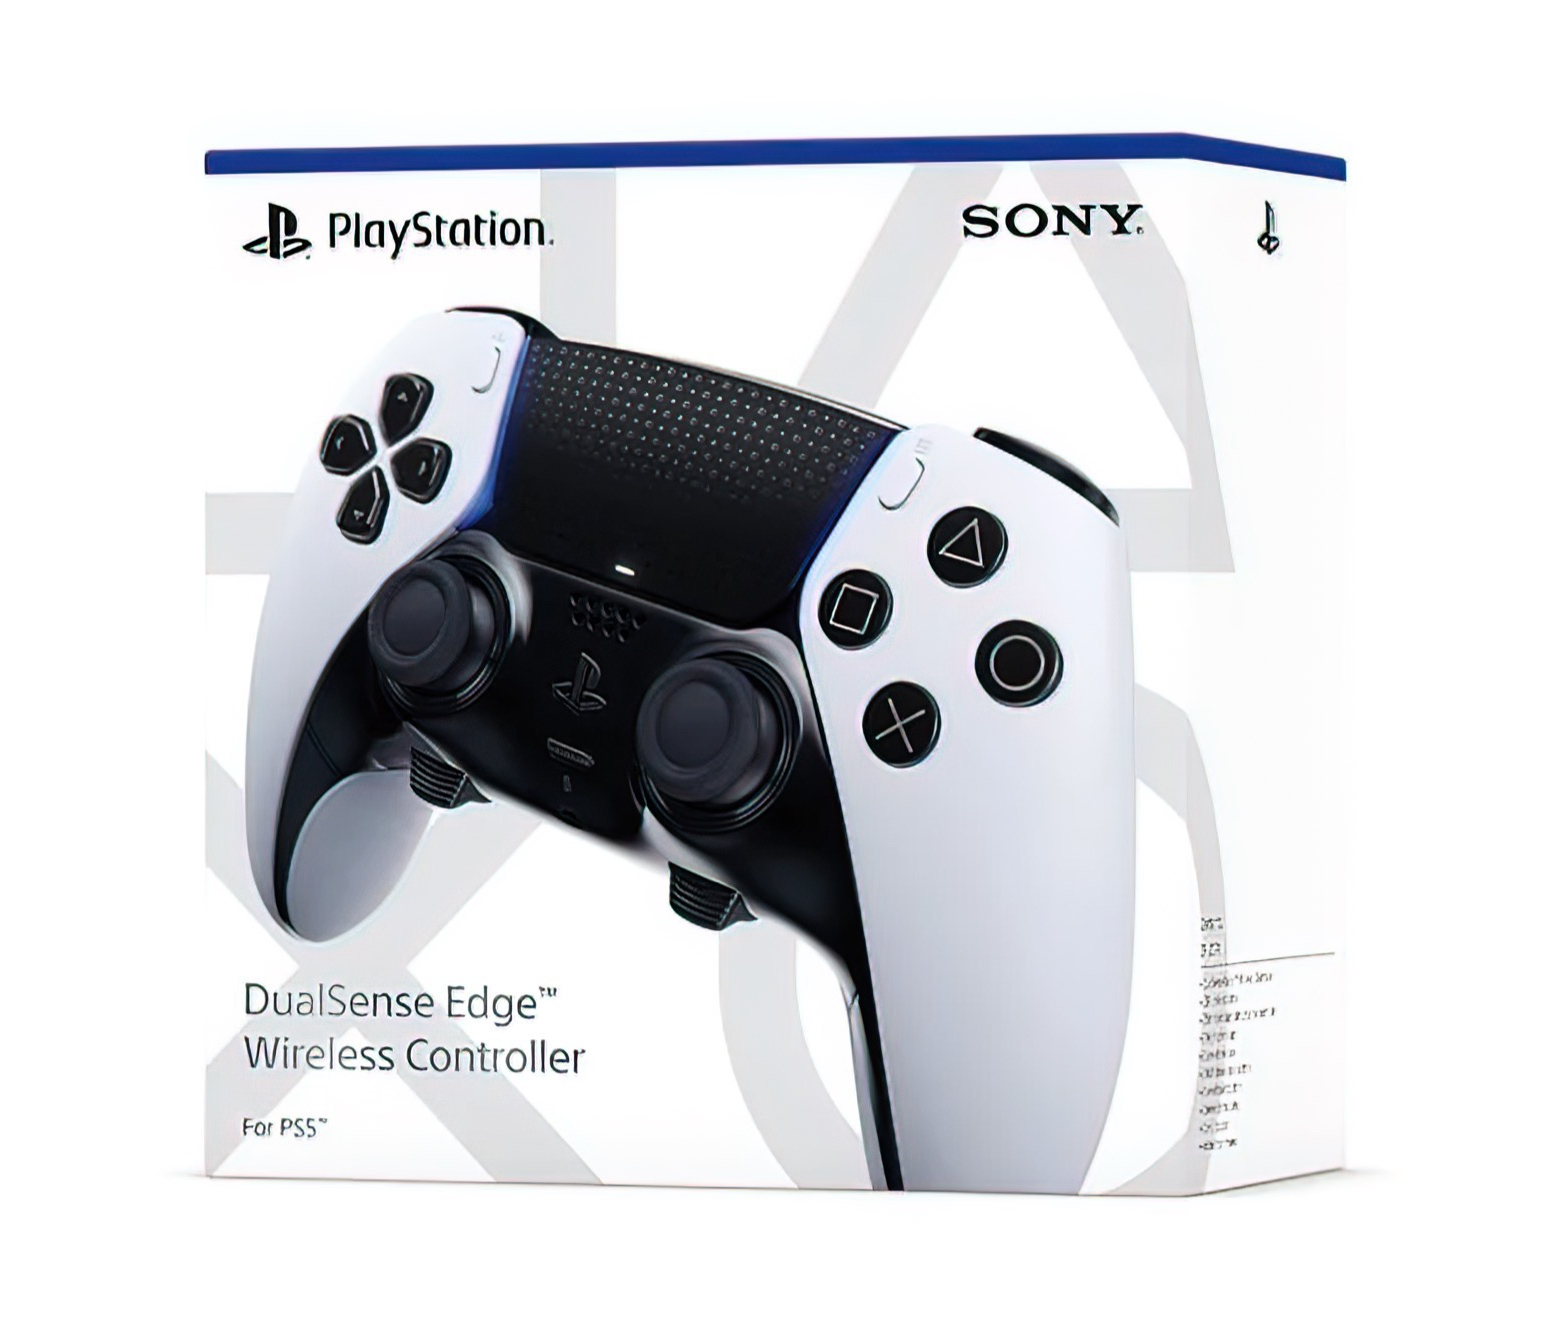 Tu consola PlayStation 5 ya tiene el mando Pro que se merece. Y en oferta:  videojuegos a otro nivel con el DualSense Edge